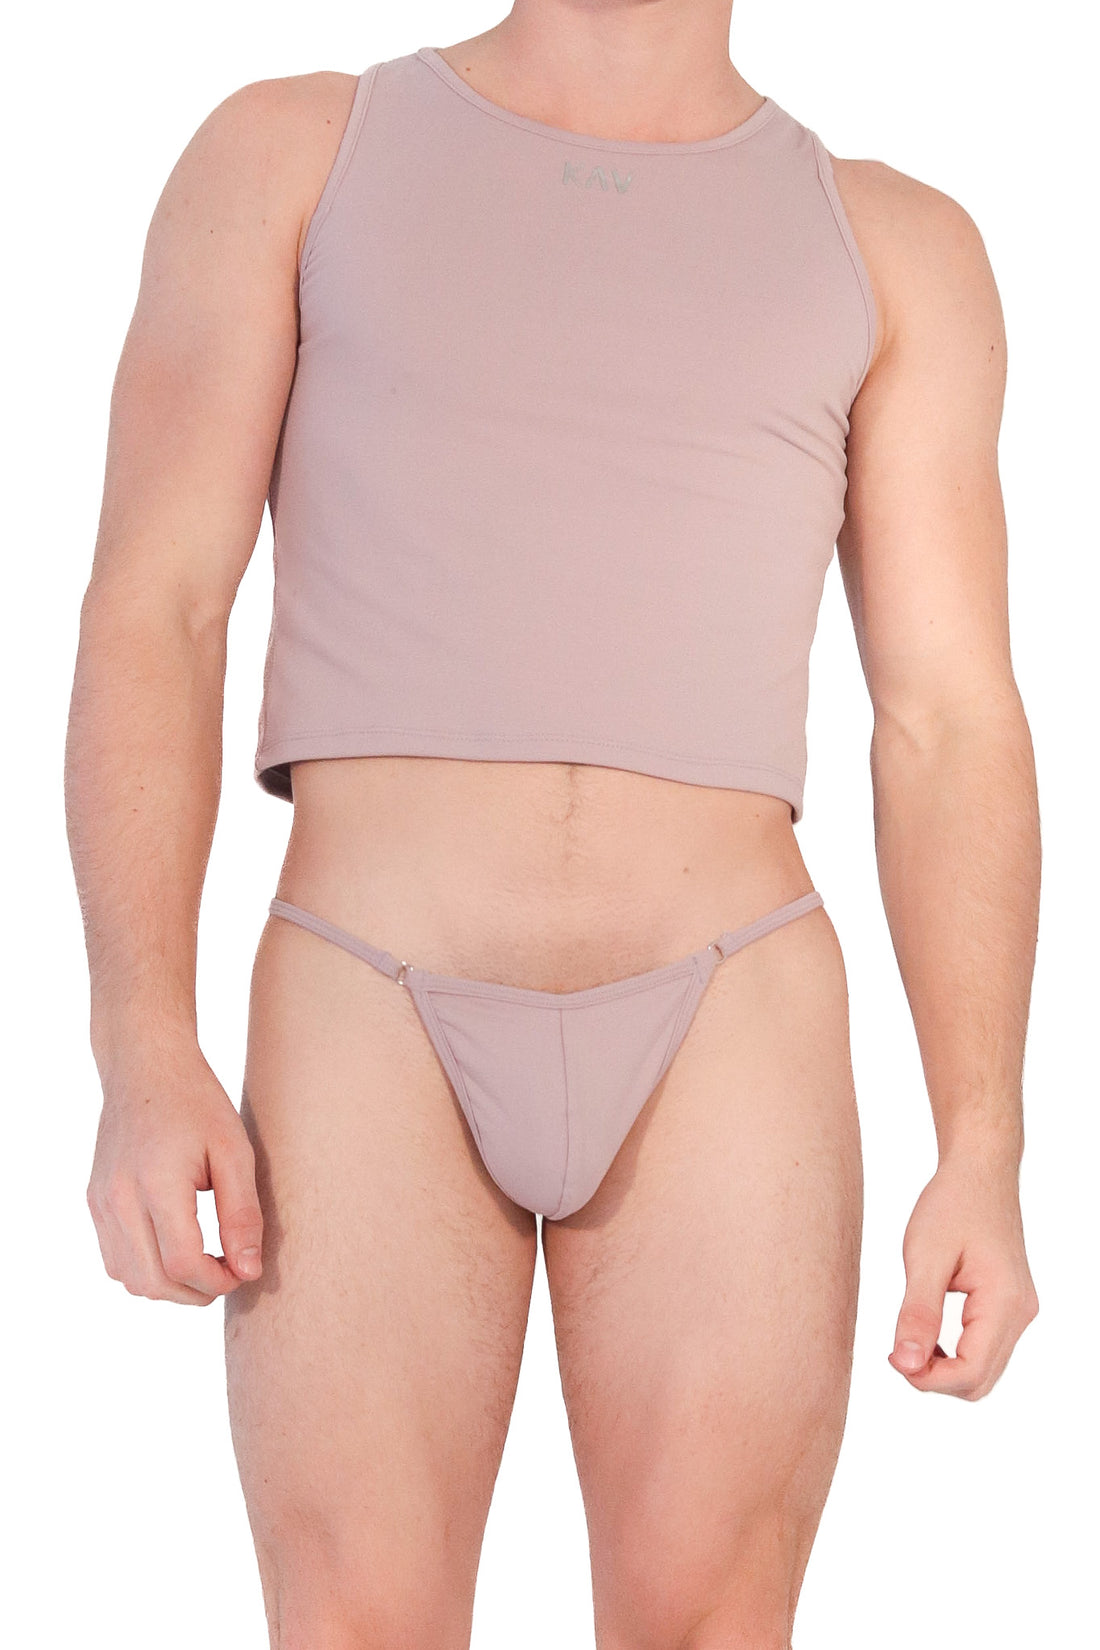 Underwear – Wear Bottoms KAV Men